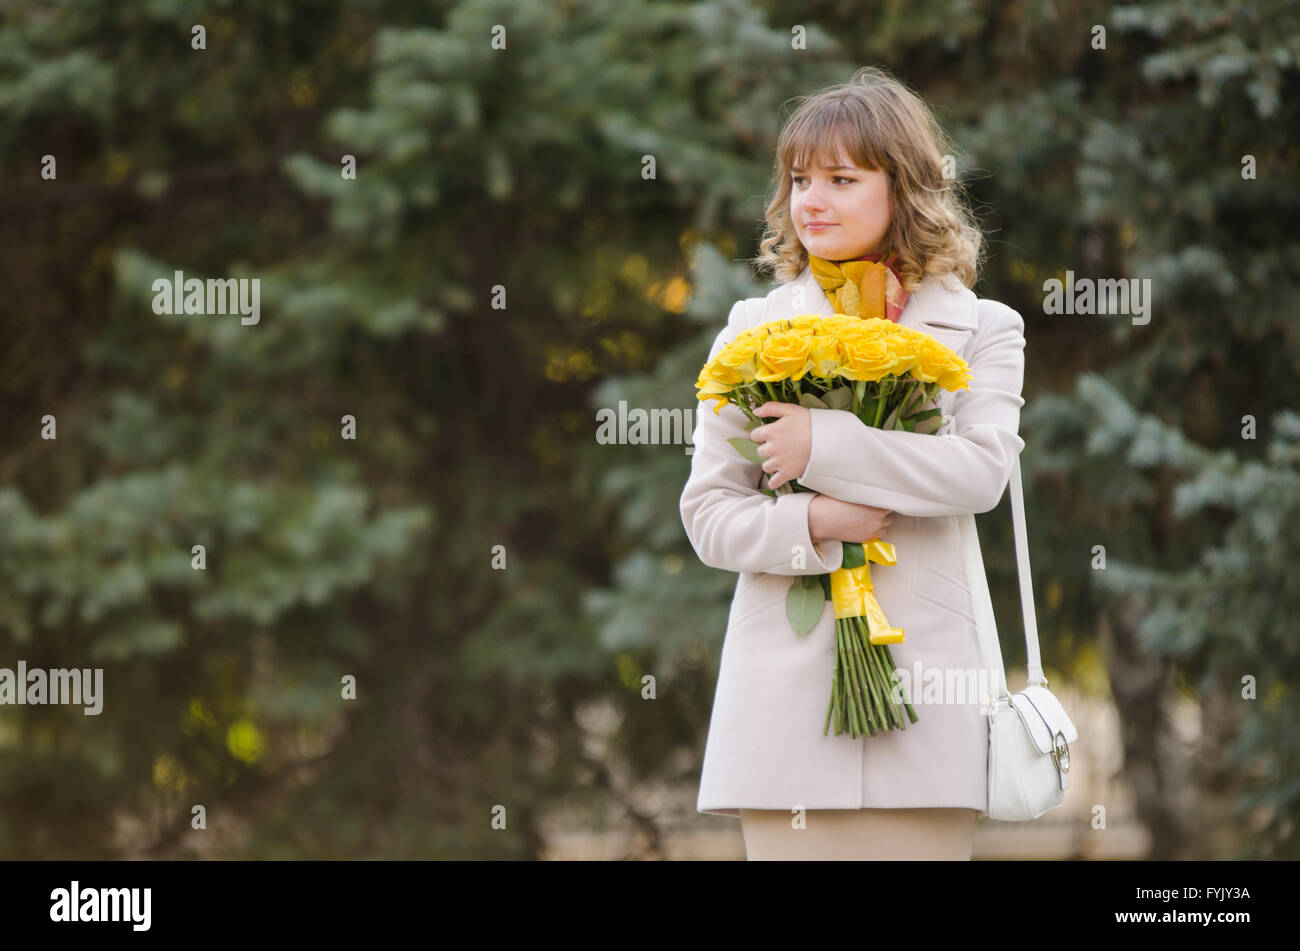 Jolie petite fille avec des roses jaunes en attente de nomination Banque D'Images